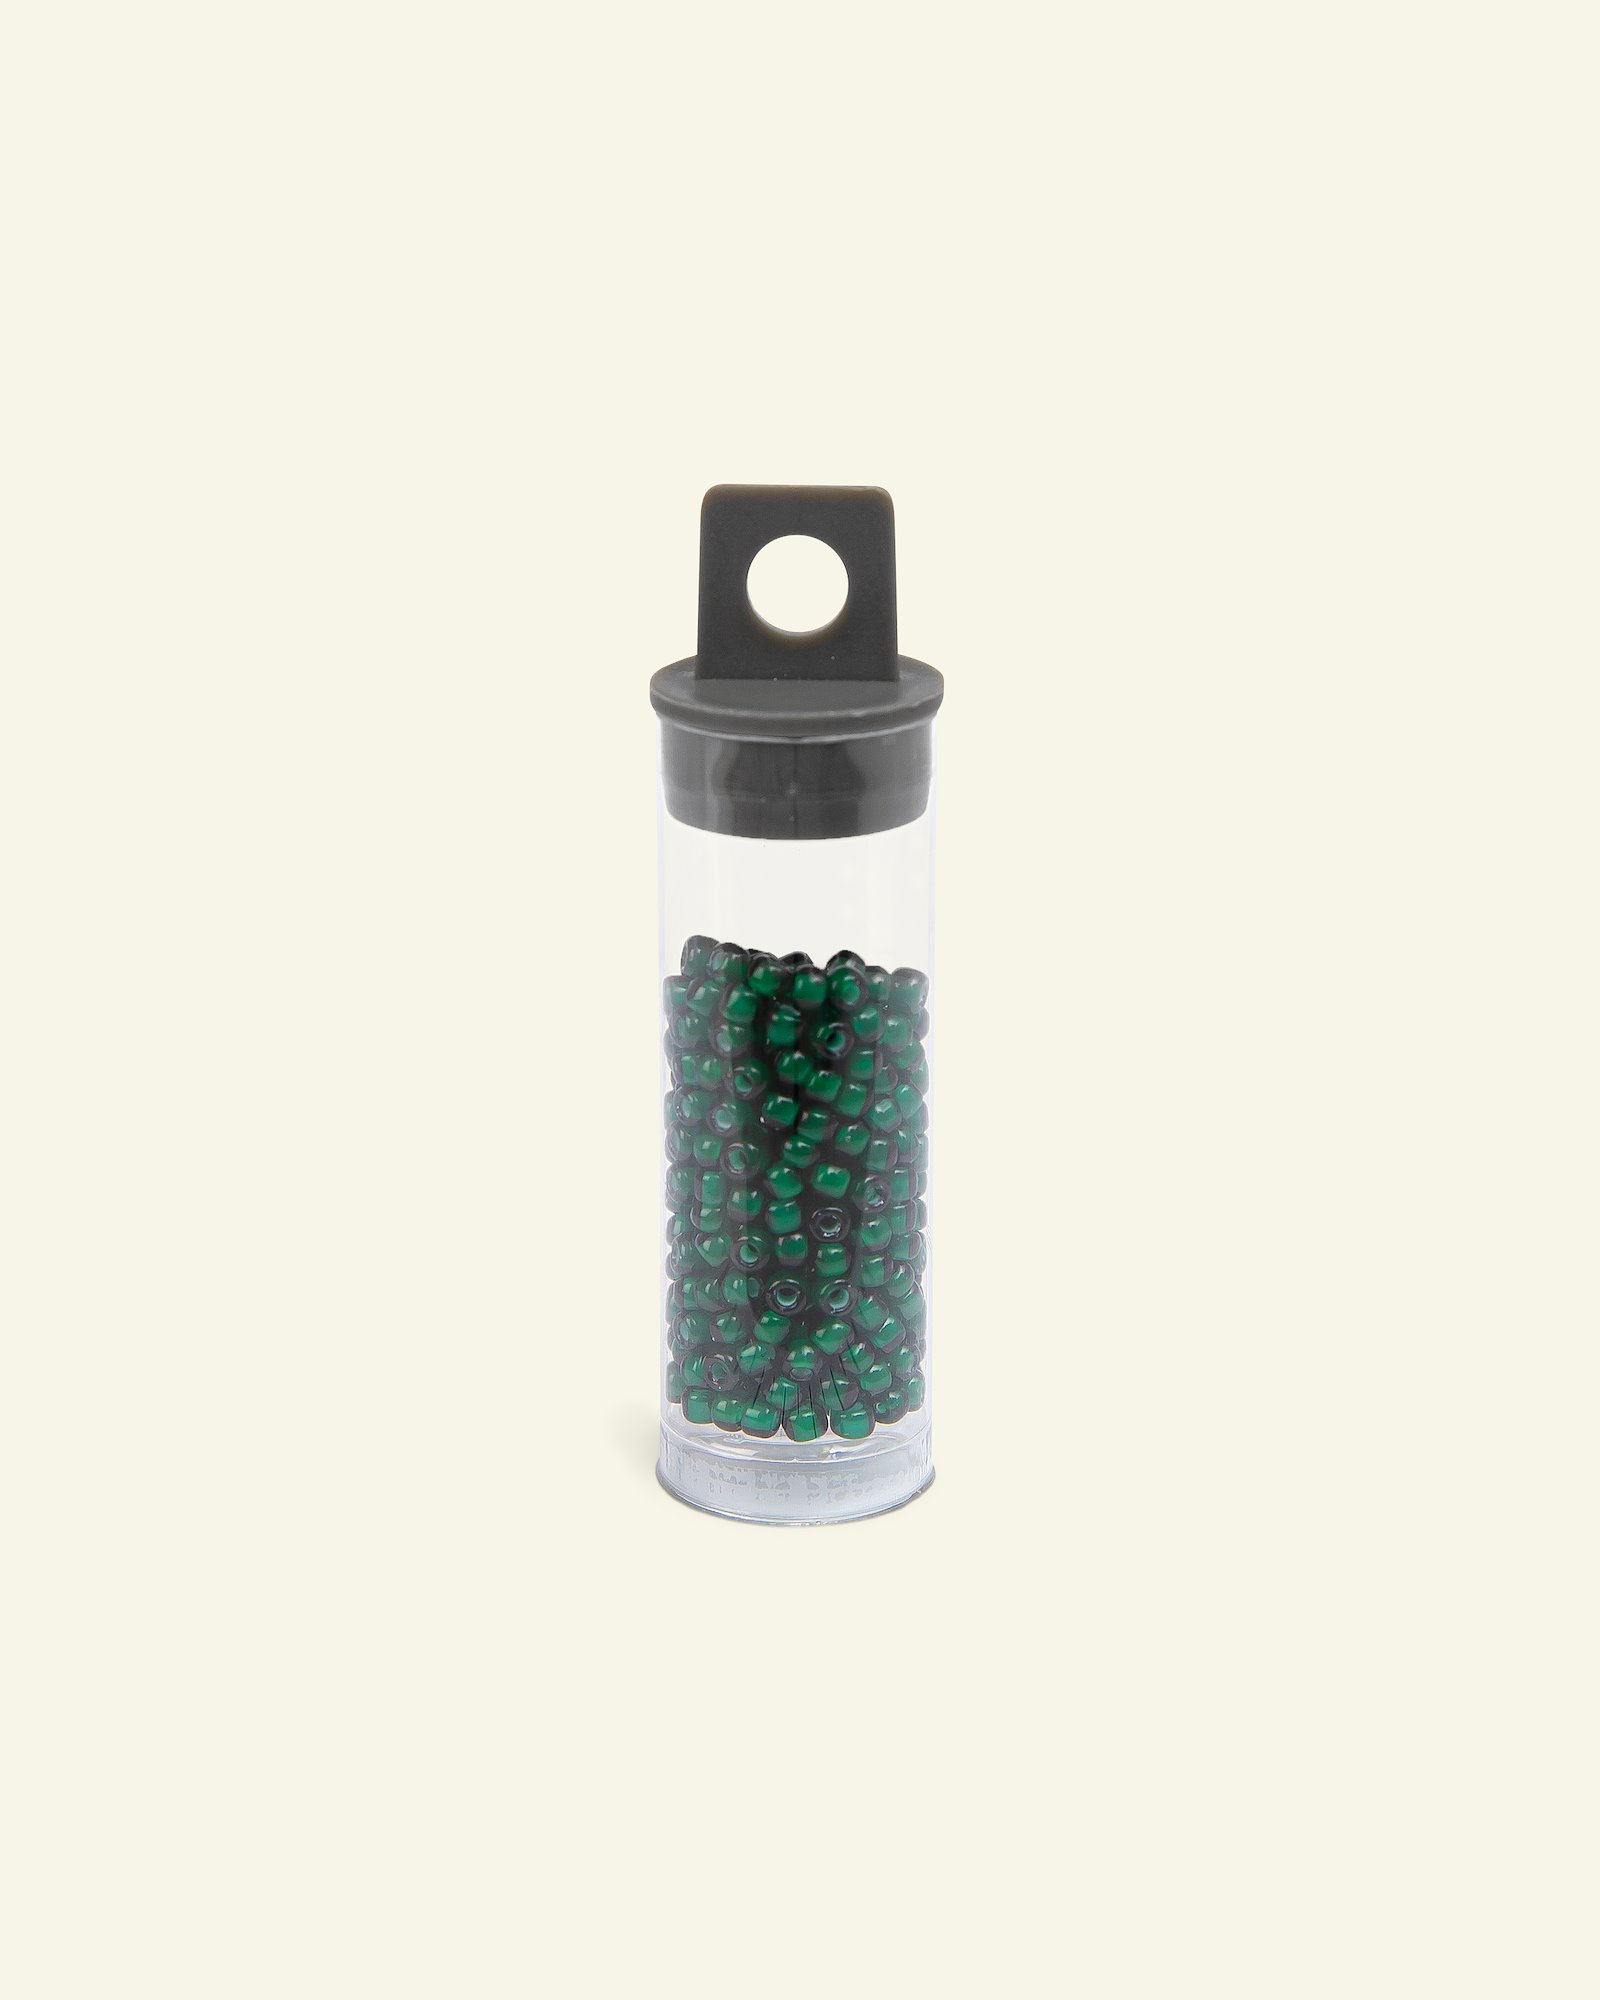 Matsuno glass bead 8/0 dark green 10g 47123_pack